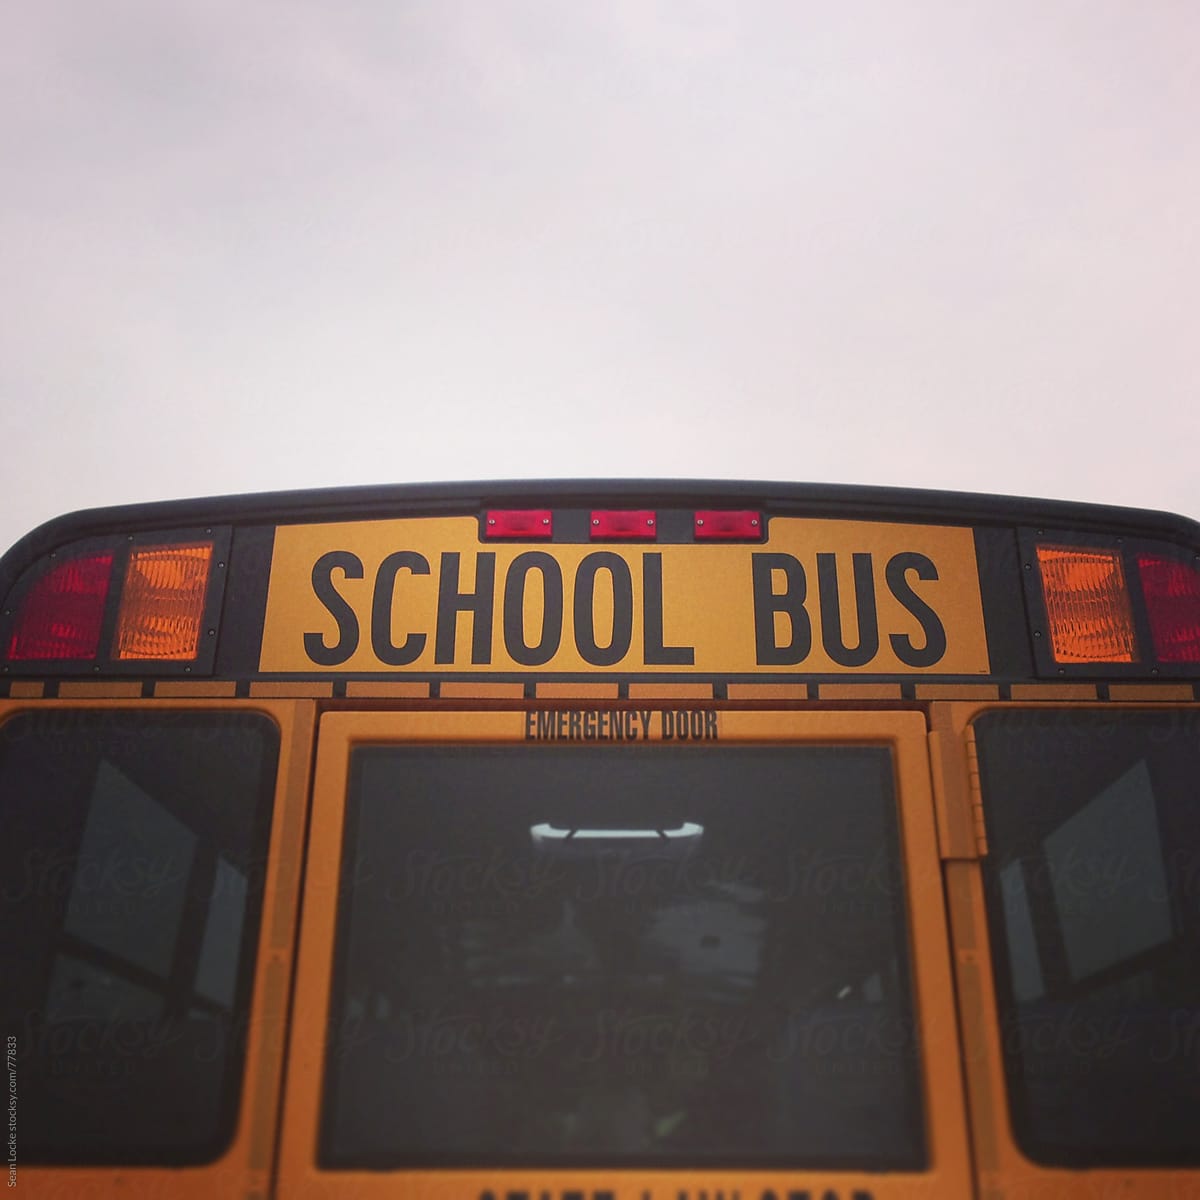 School Bus: Rear View of School Bus